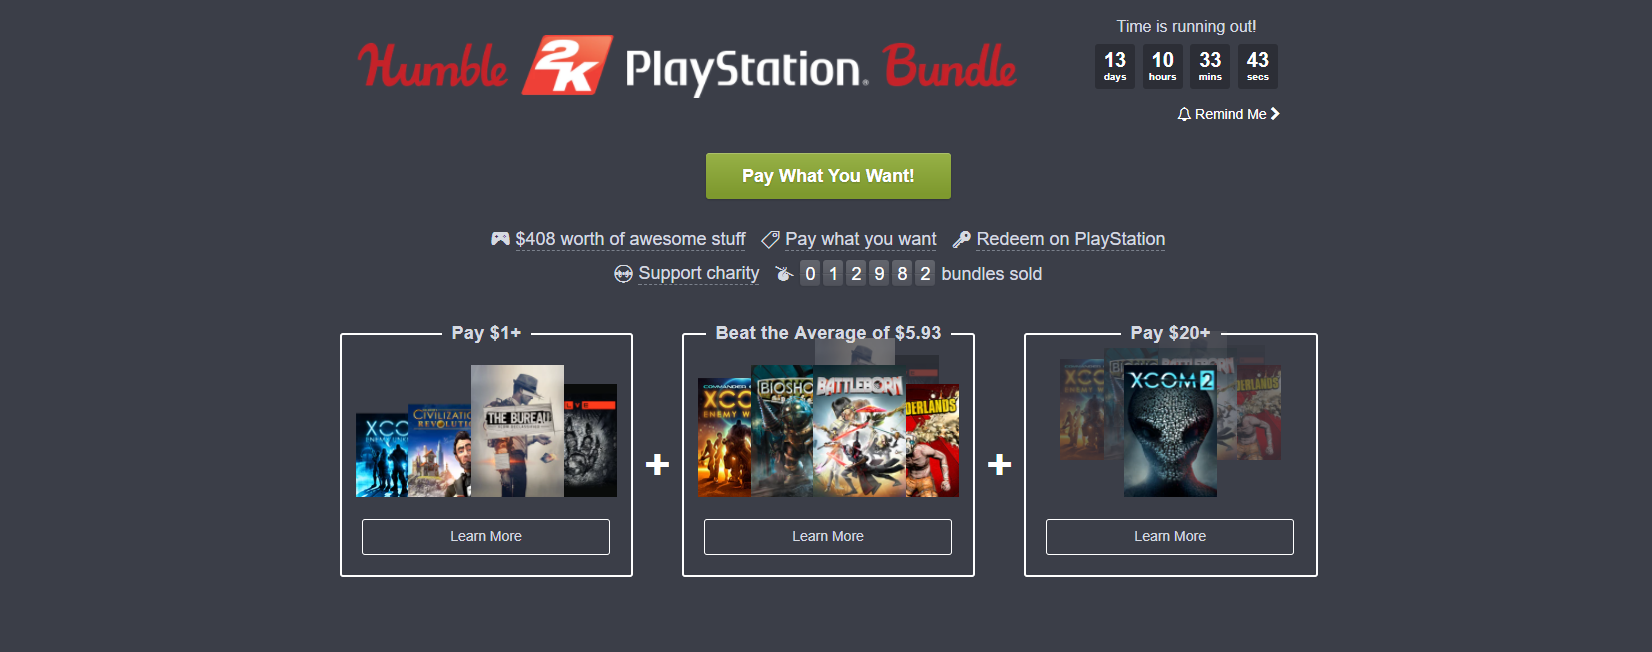 Humble 2K PlayStation Bundle sayesinde 1 Dolar ödeyerek, PlayStation oyunu sahibi olabilirsiniz